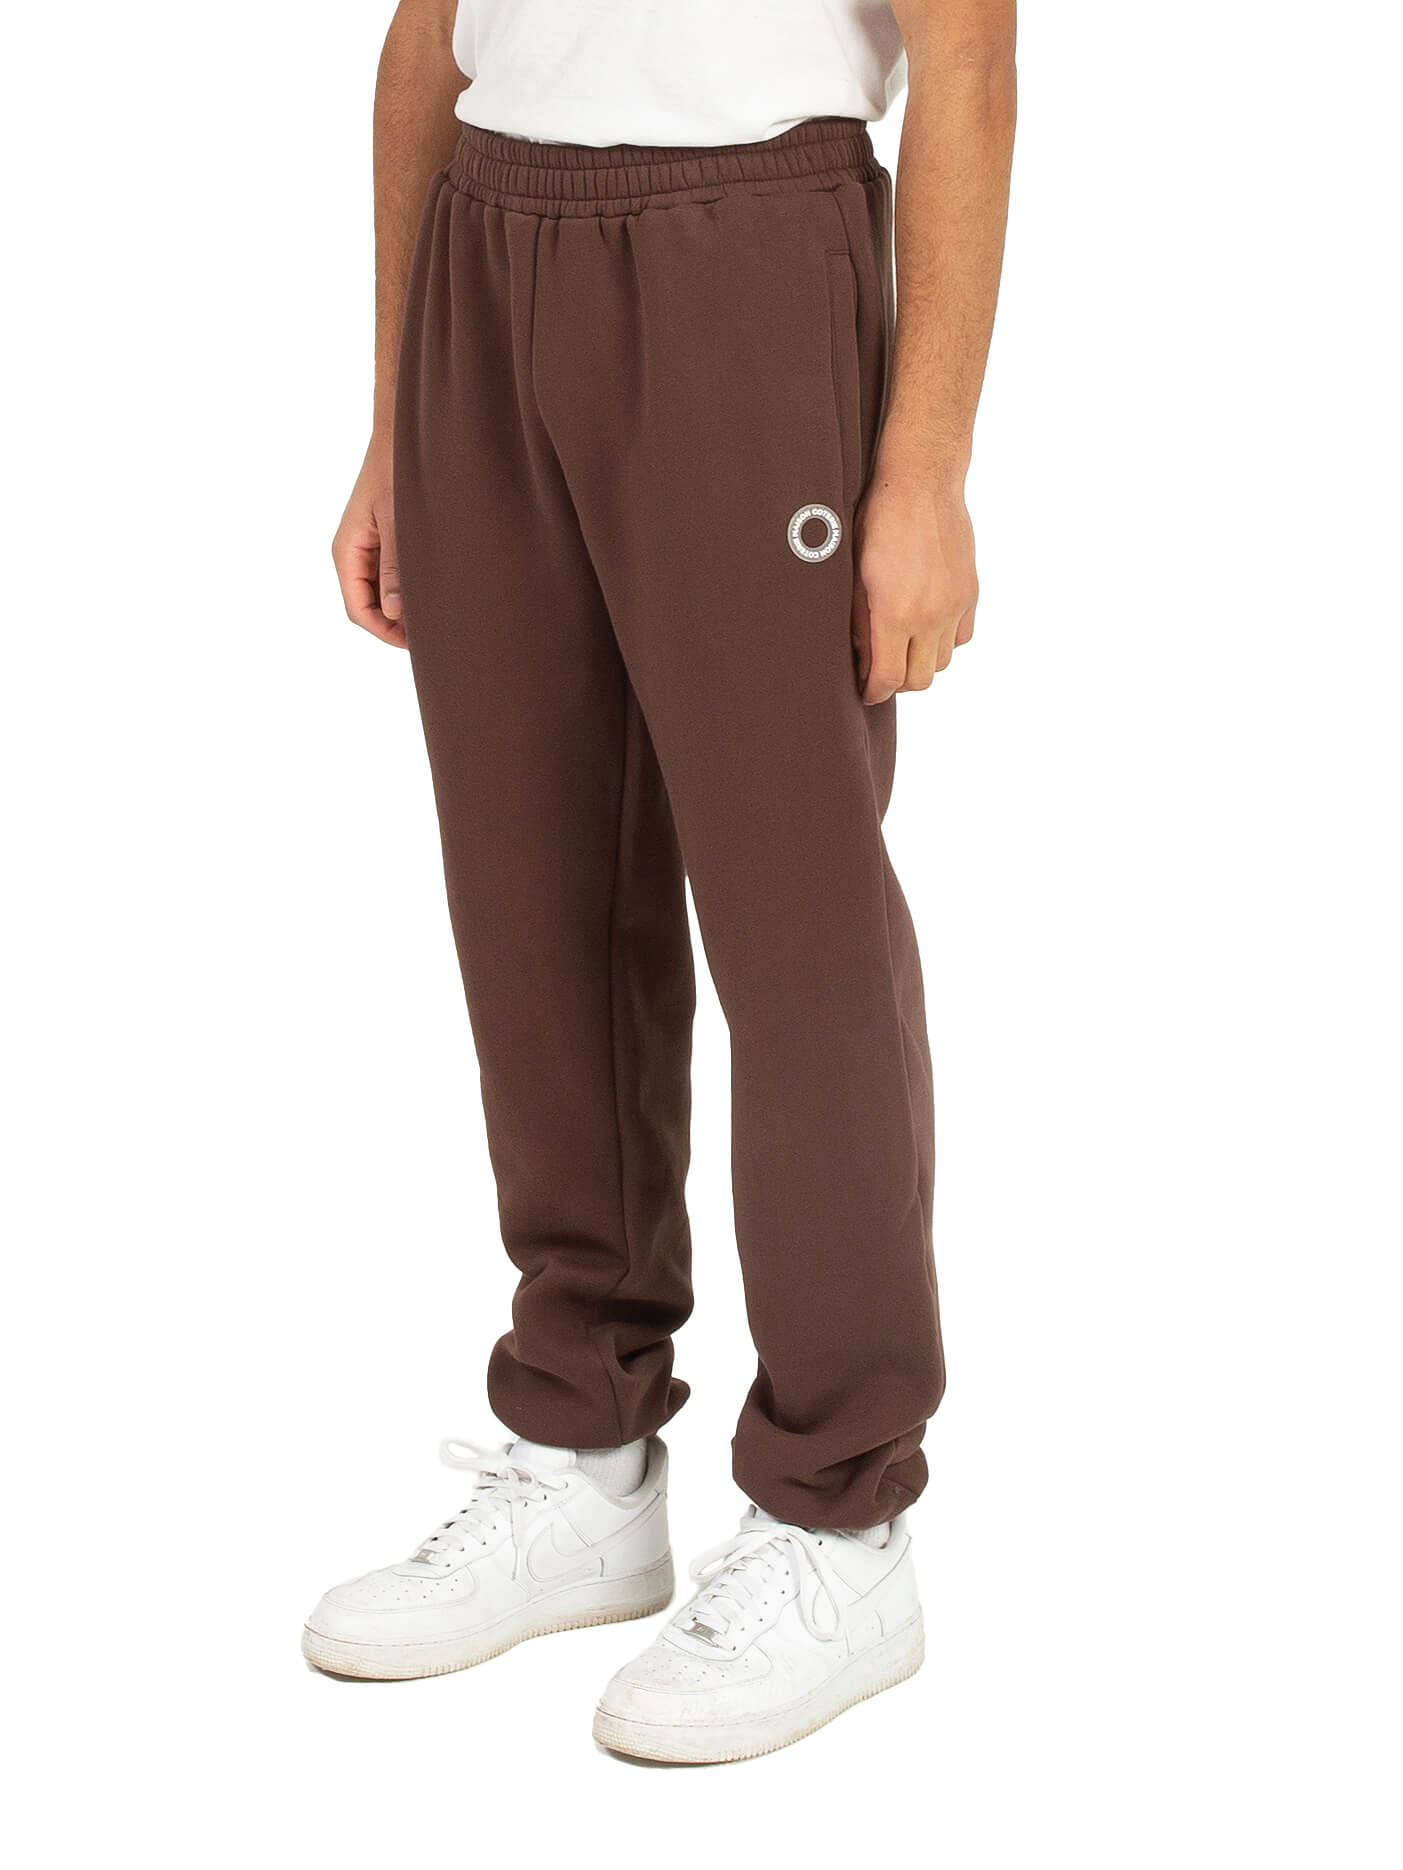 Kaylo - Pantalon de molleton brun